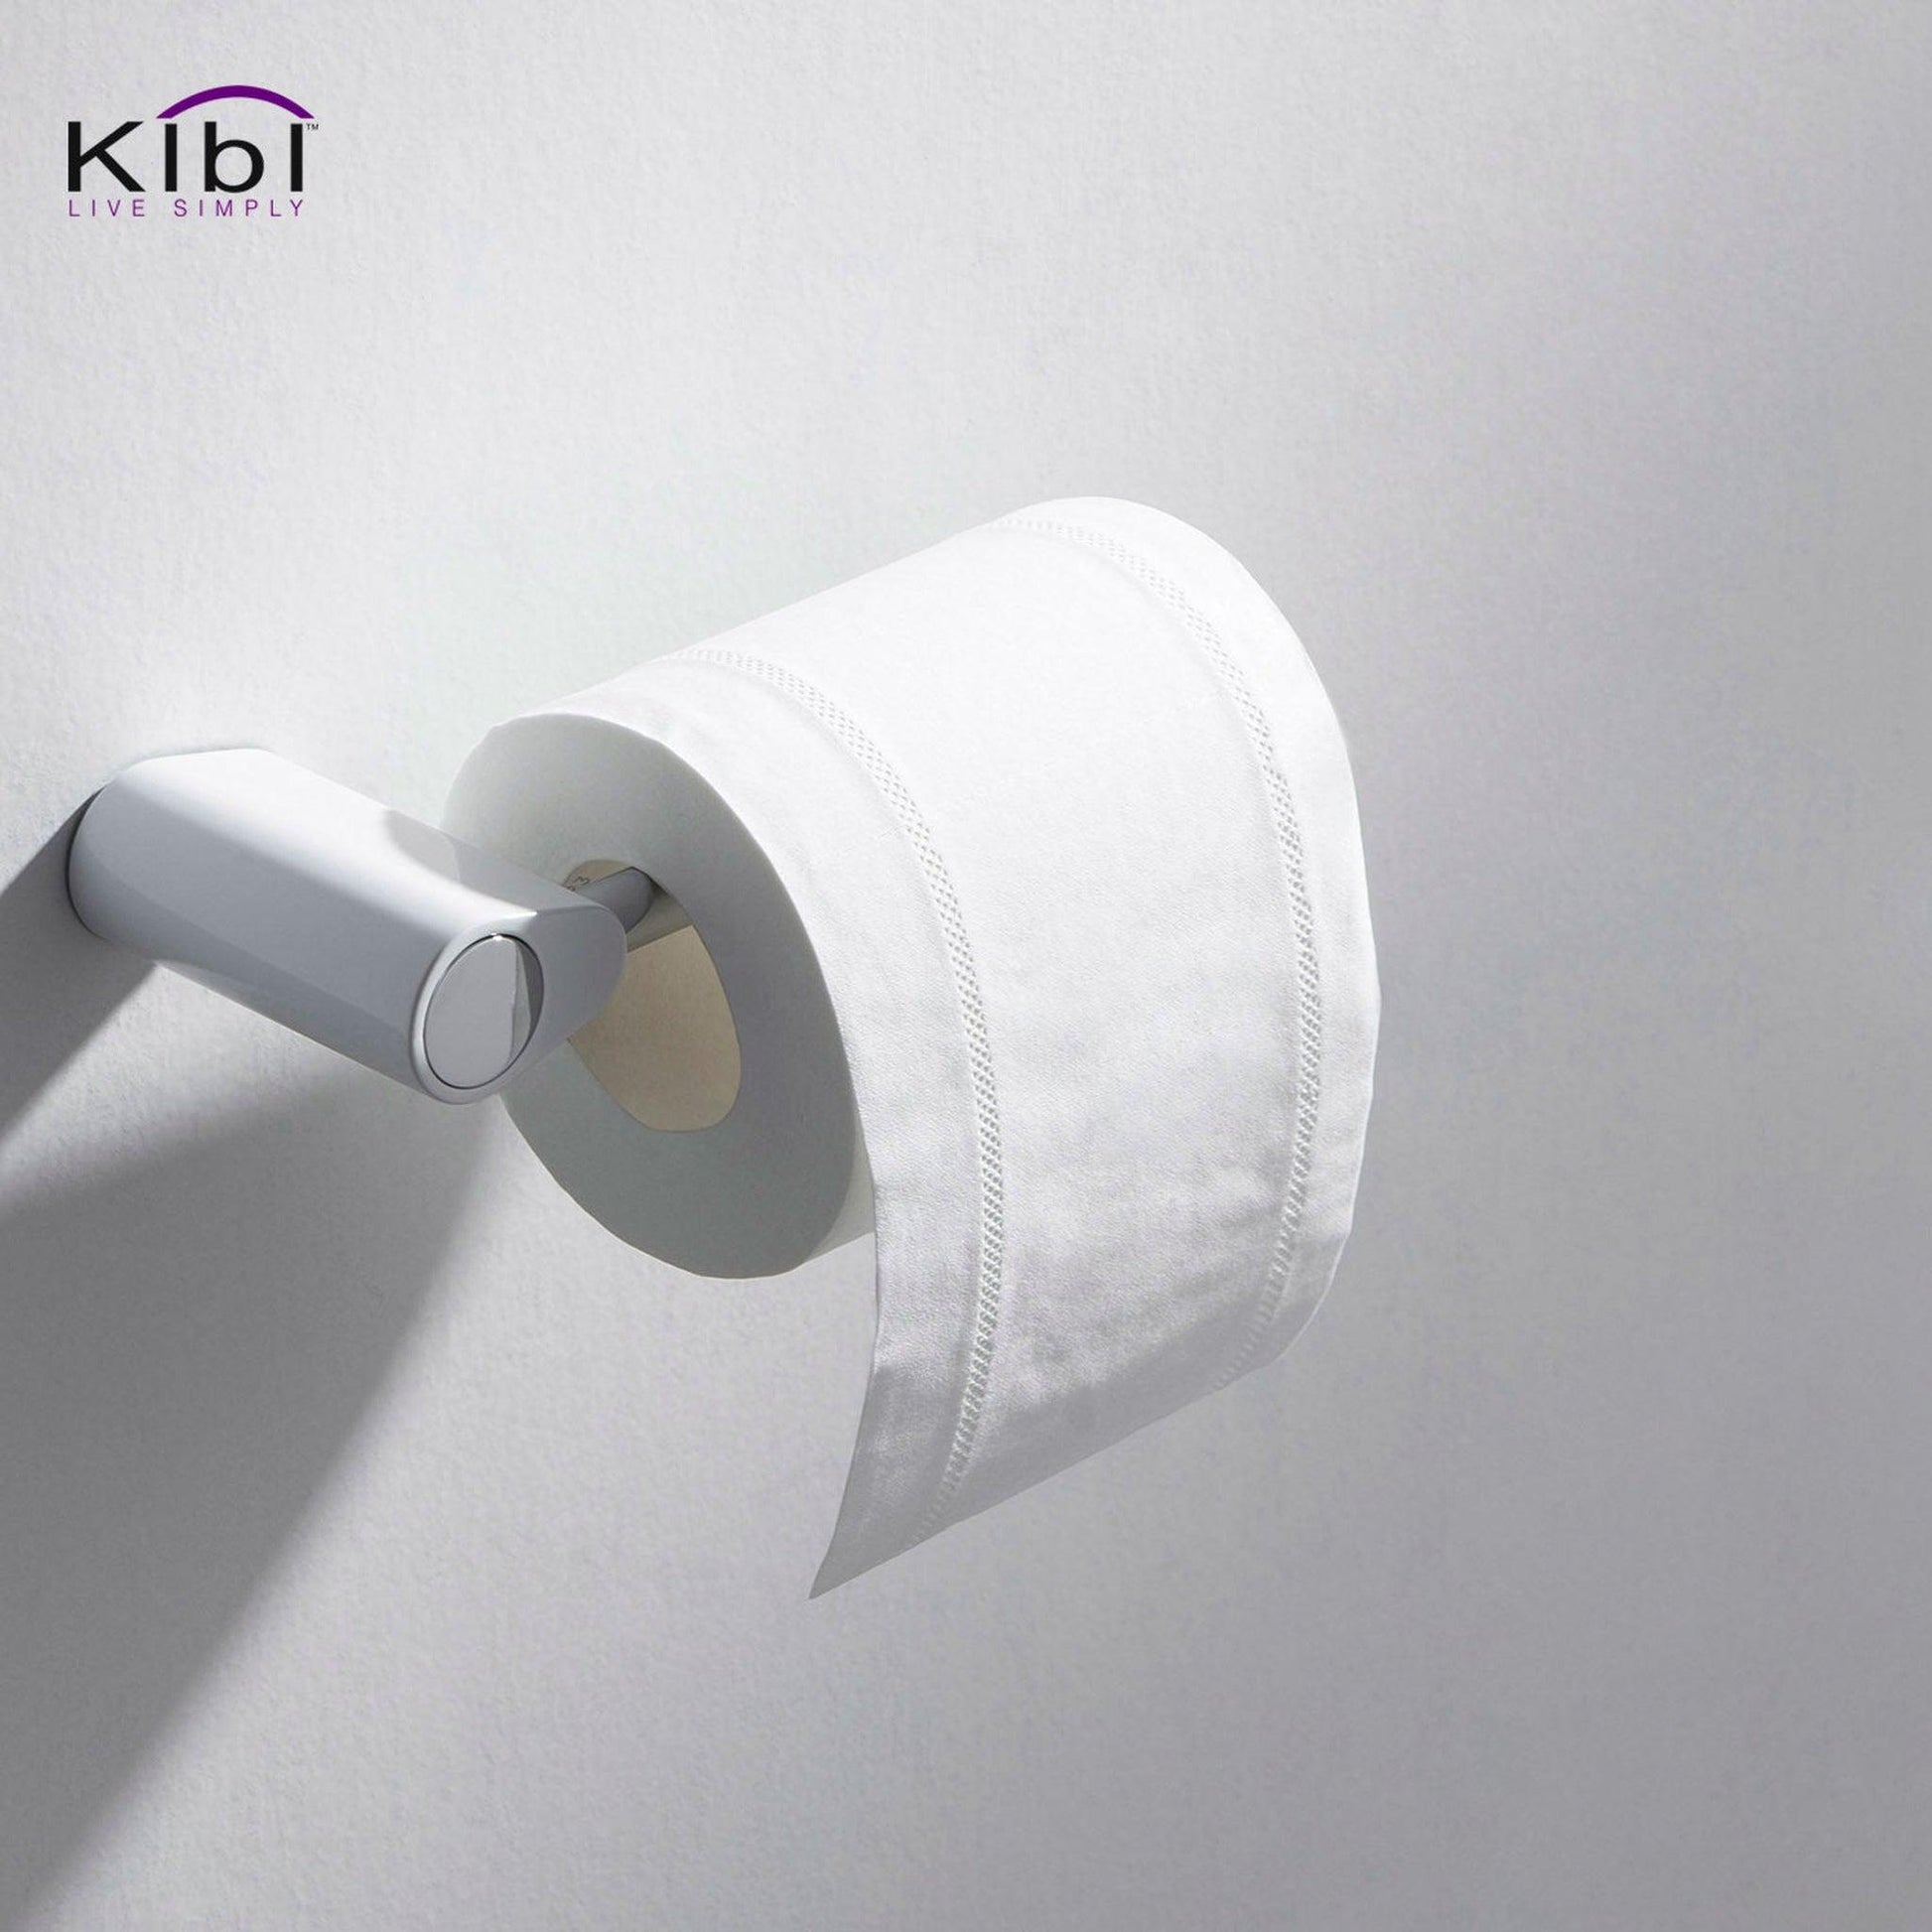 KIBI Volcano Brass Bathroom Tissue Holder in Chrome White Finish